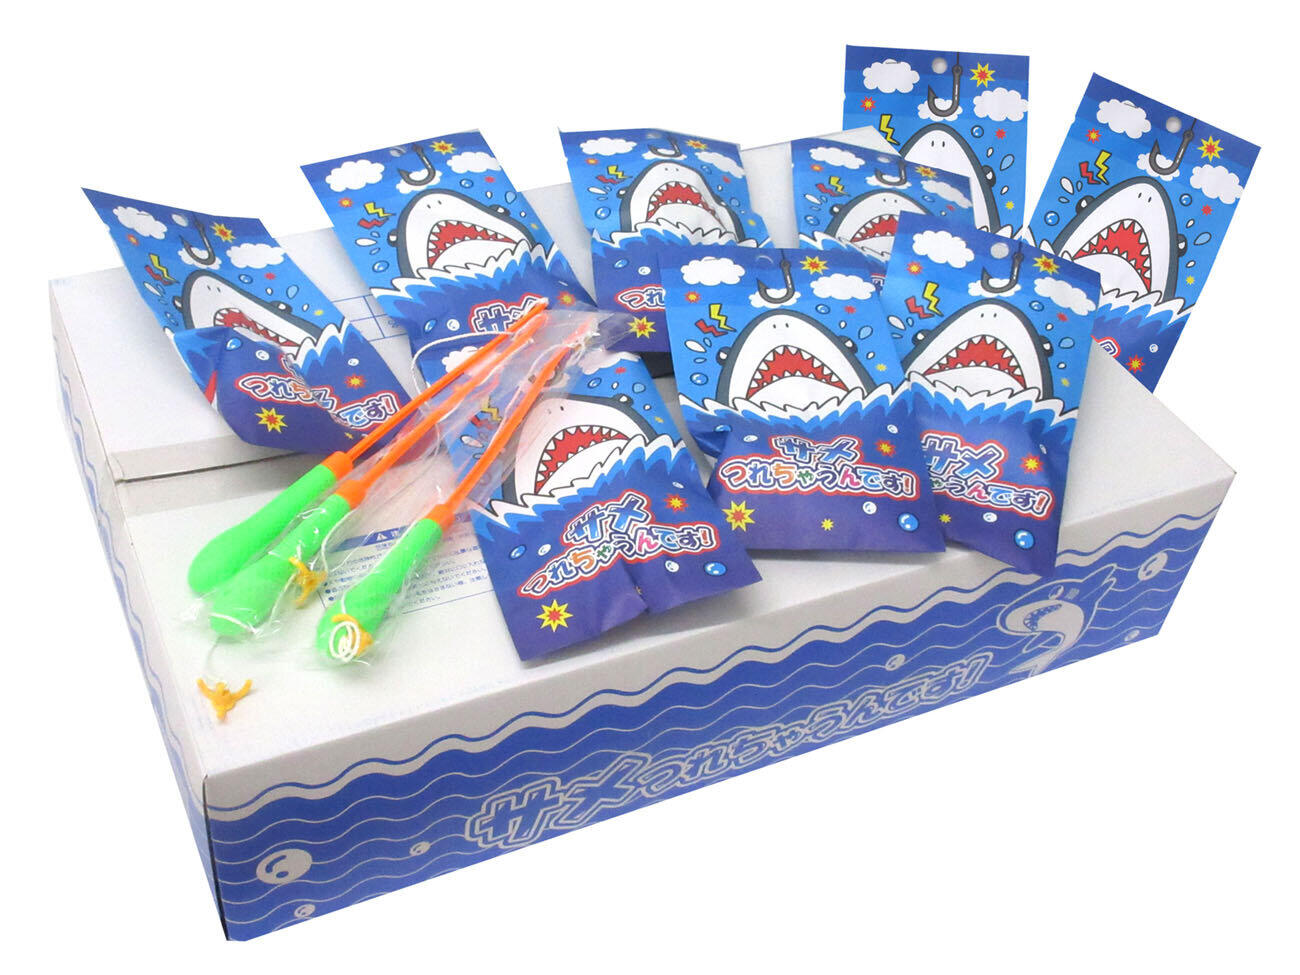 お祭りではサメの模型を竿で釣り上げ、口の中に入っている番号札に応じた景品をもらう